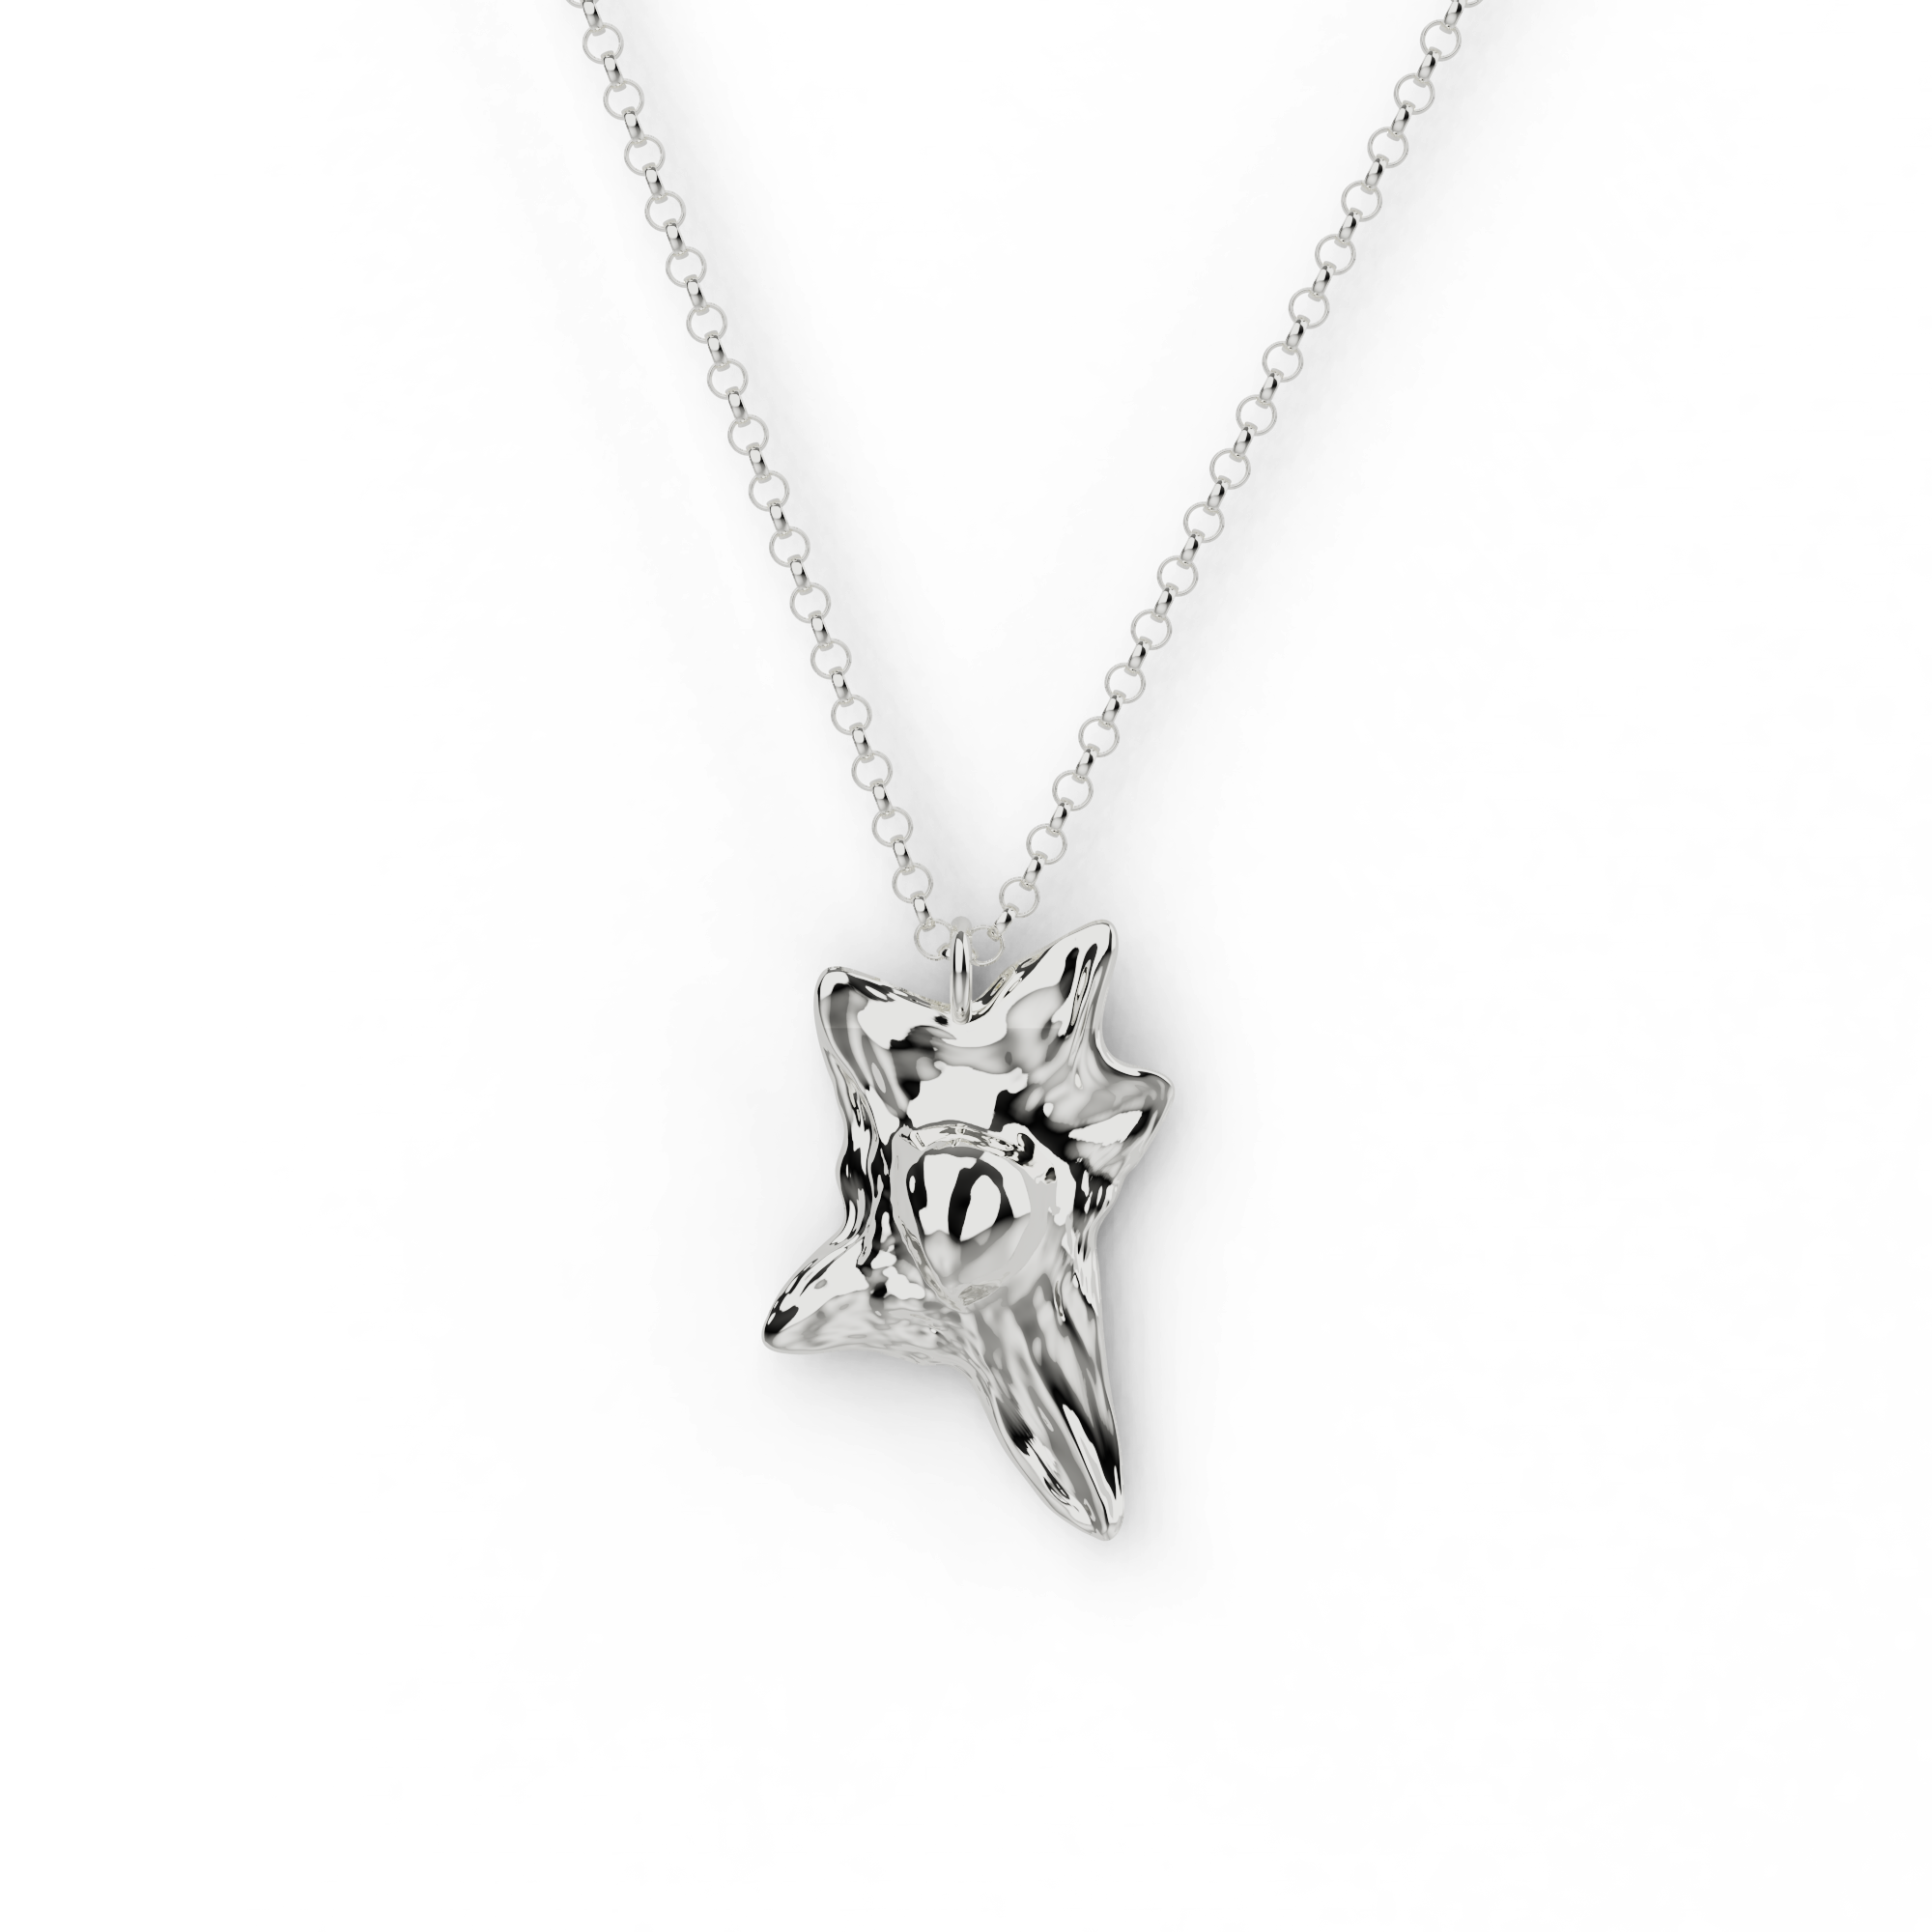 fibroblast necklace | silver